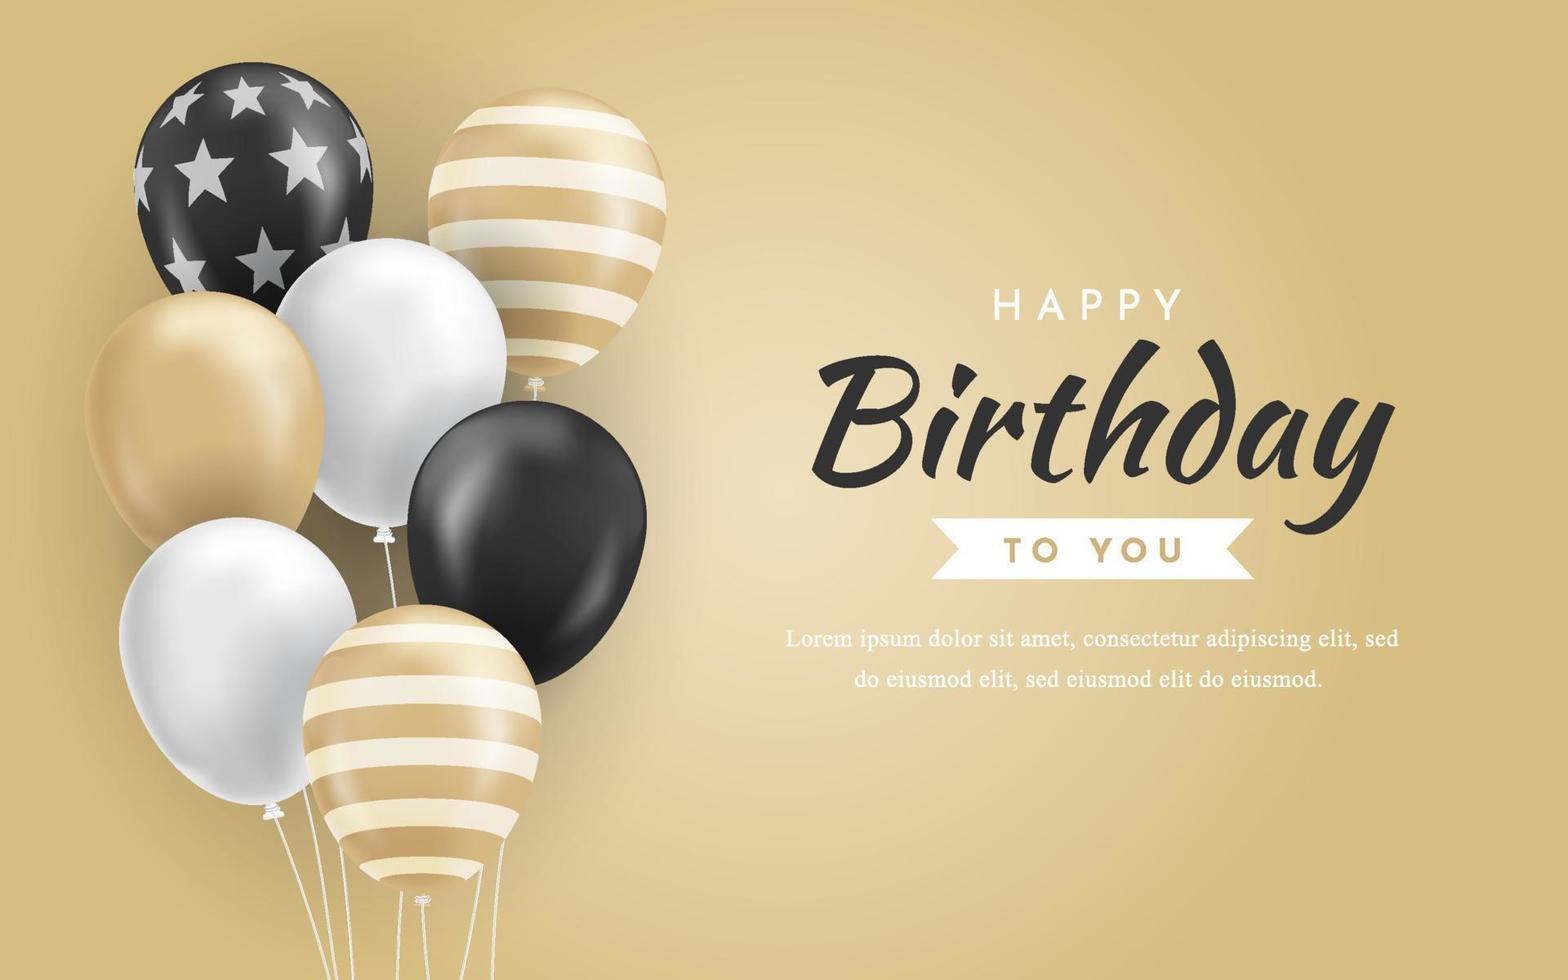 grattis på födelsedagen bakgrund med realistiska lyxiga gyllene ballonger vektor